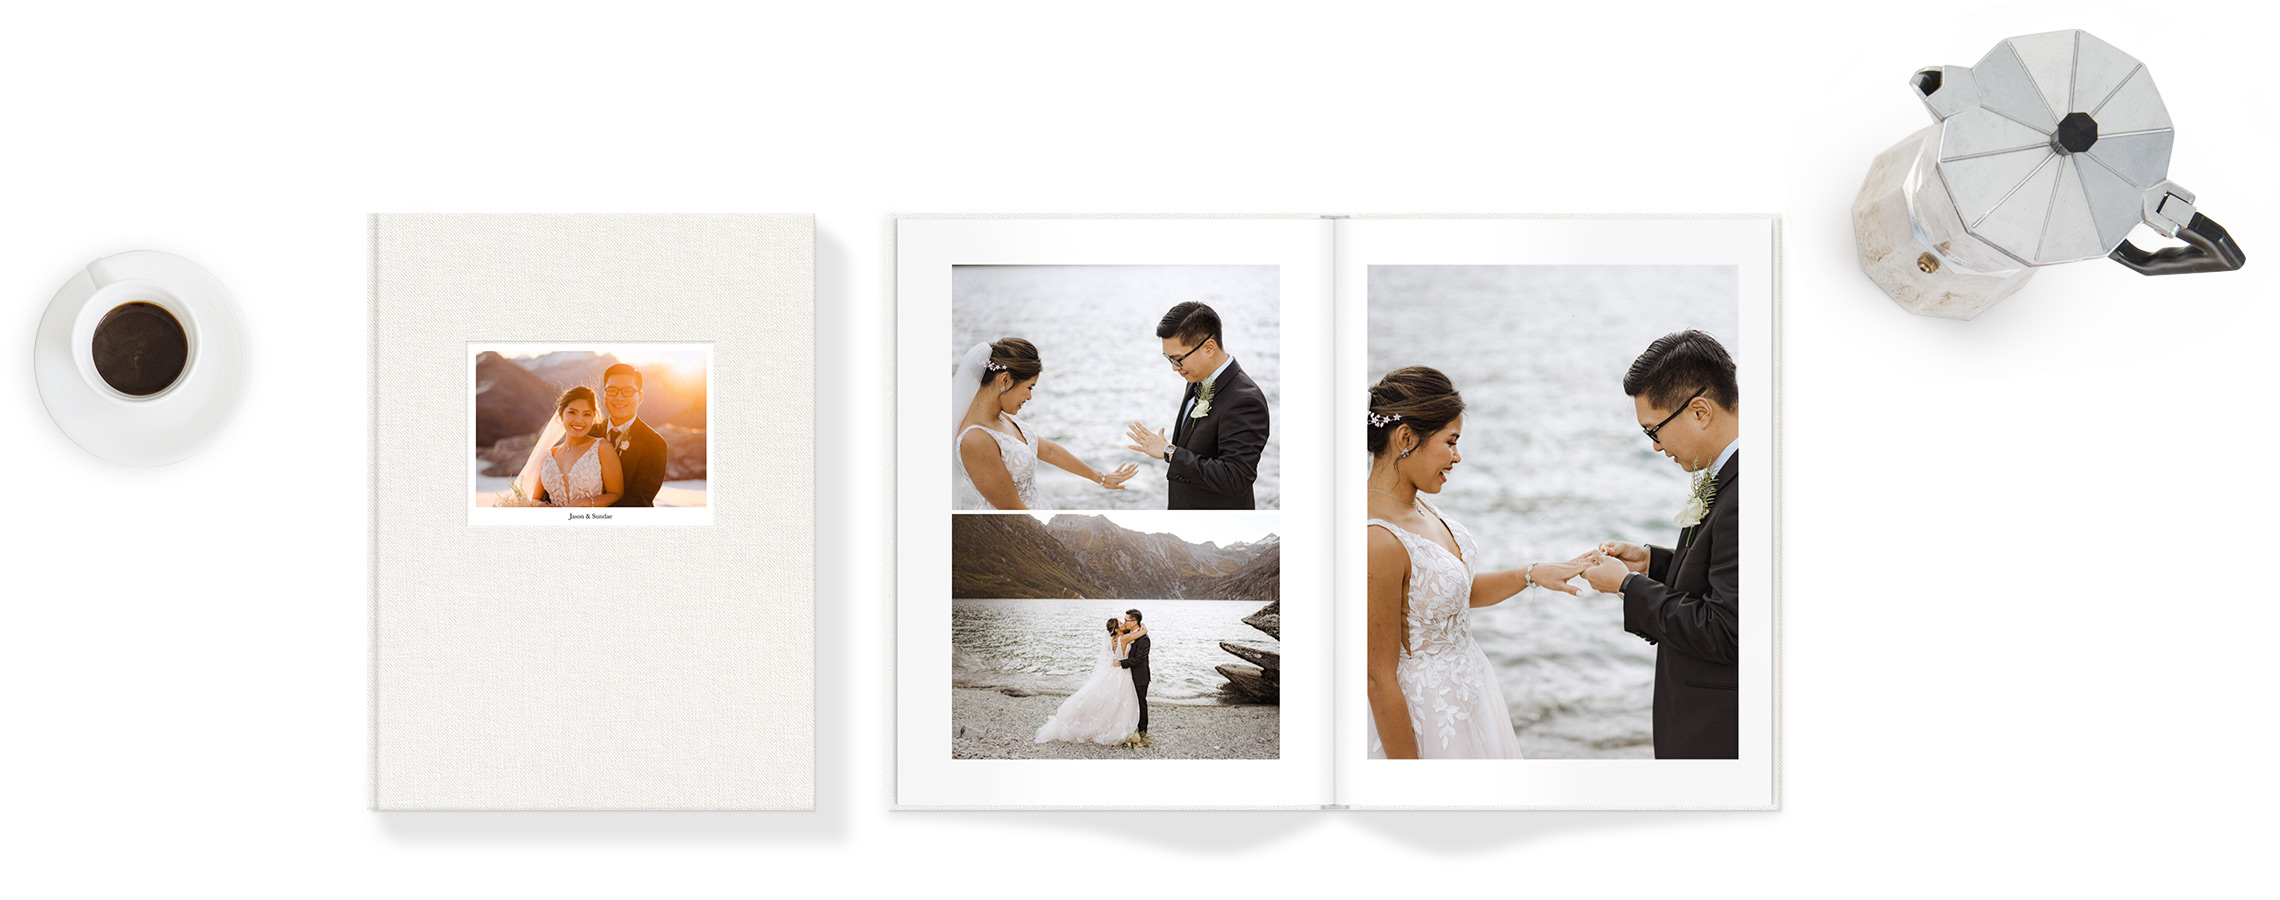 Open wedding photo album showing wedding portraits